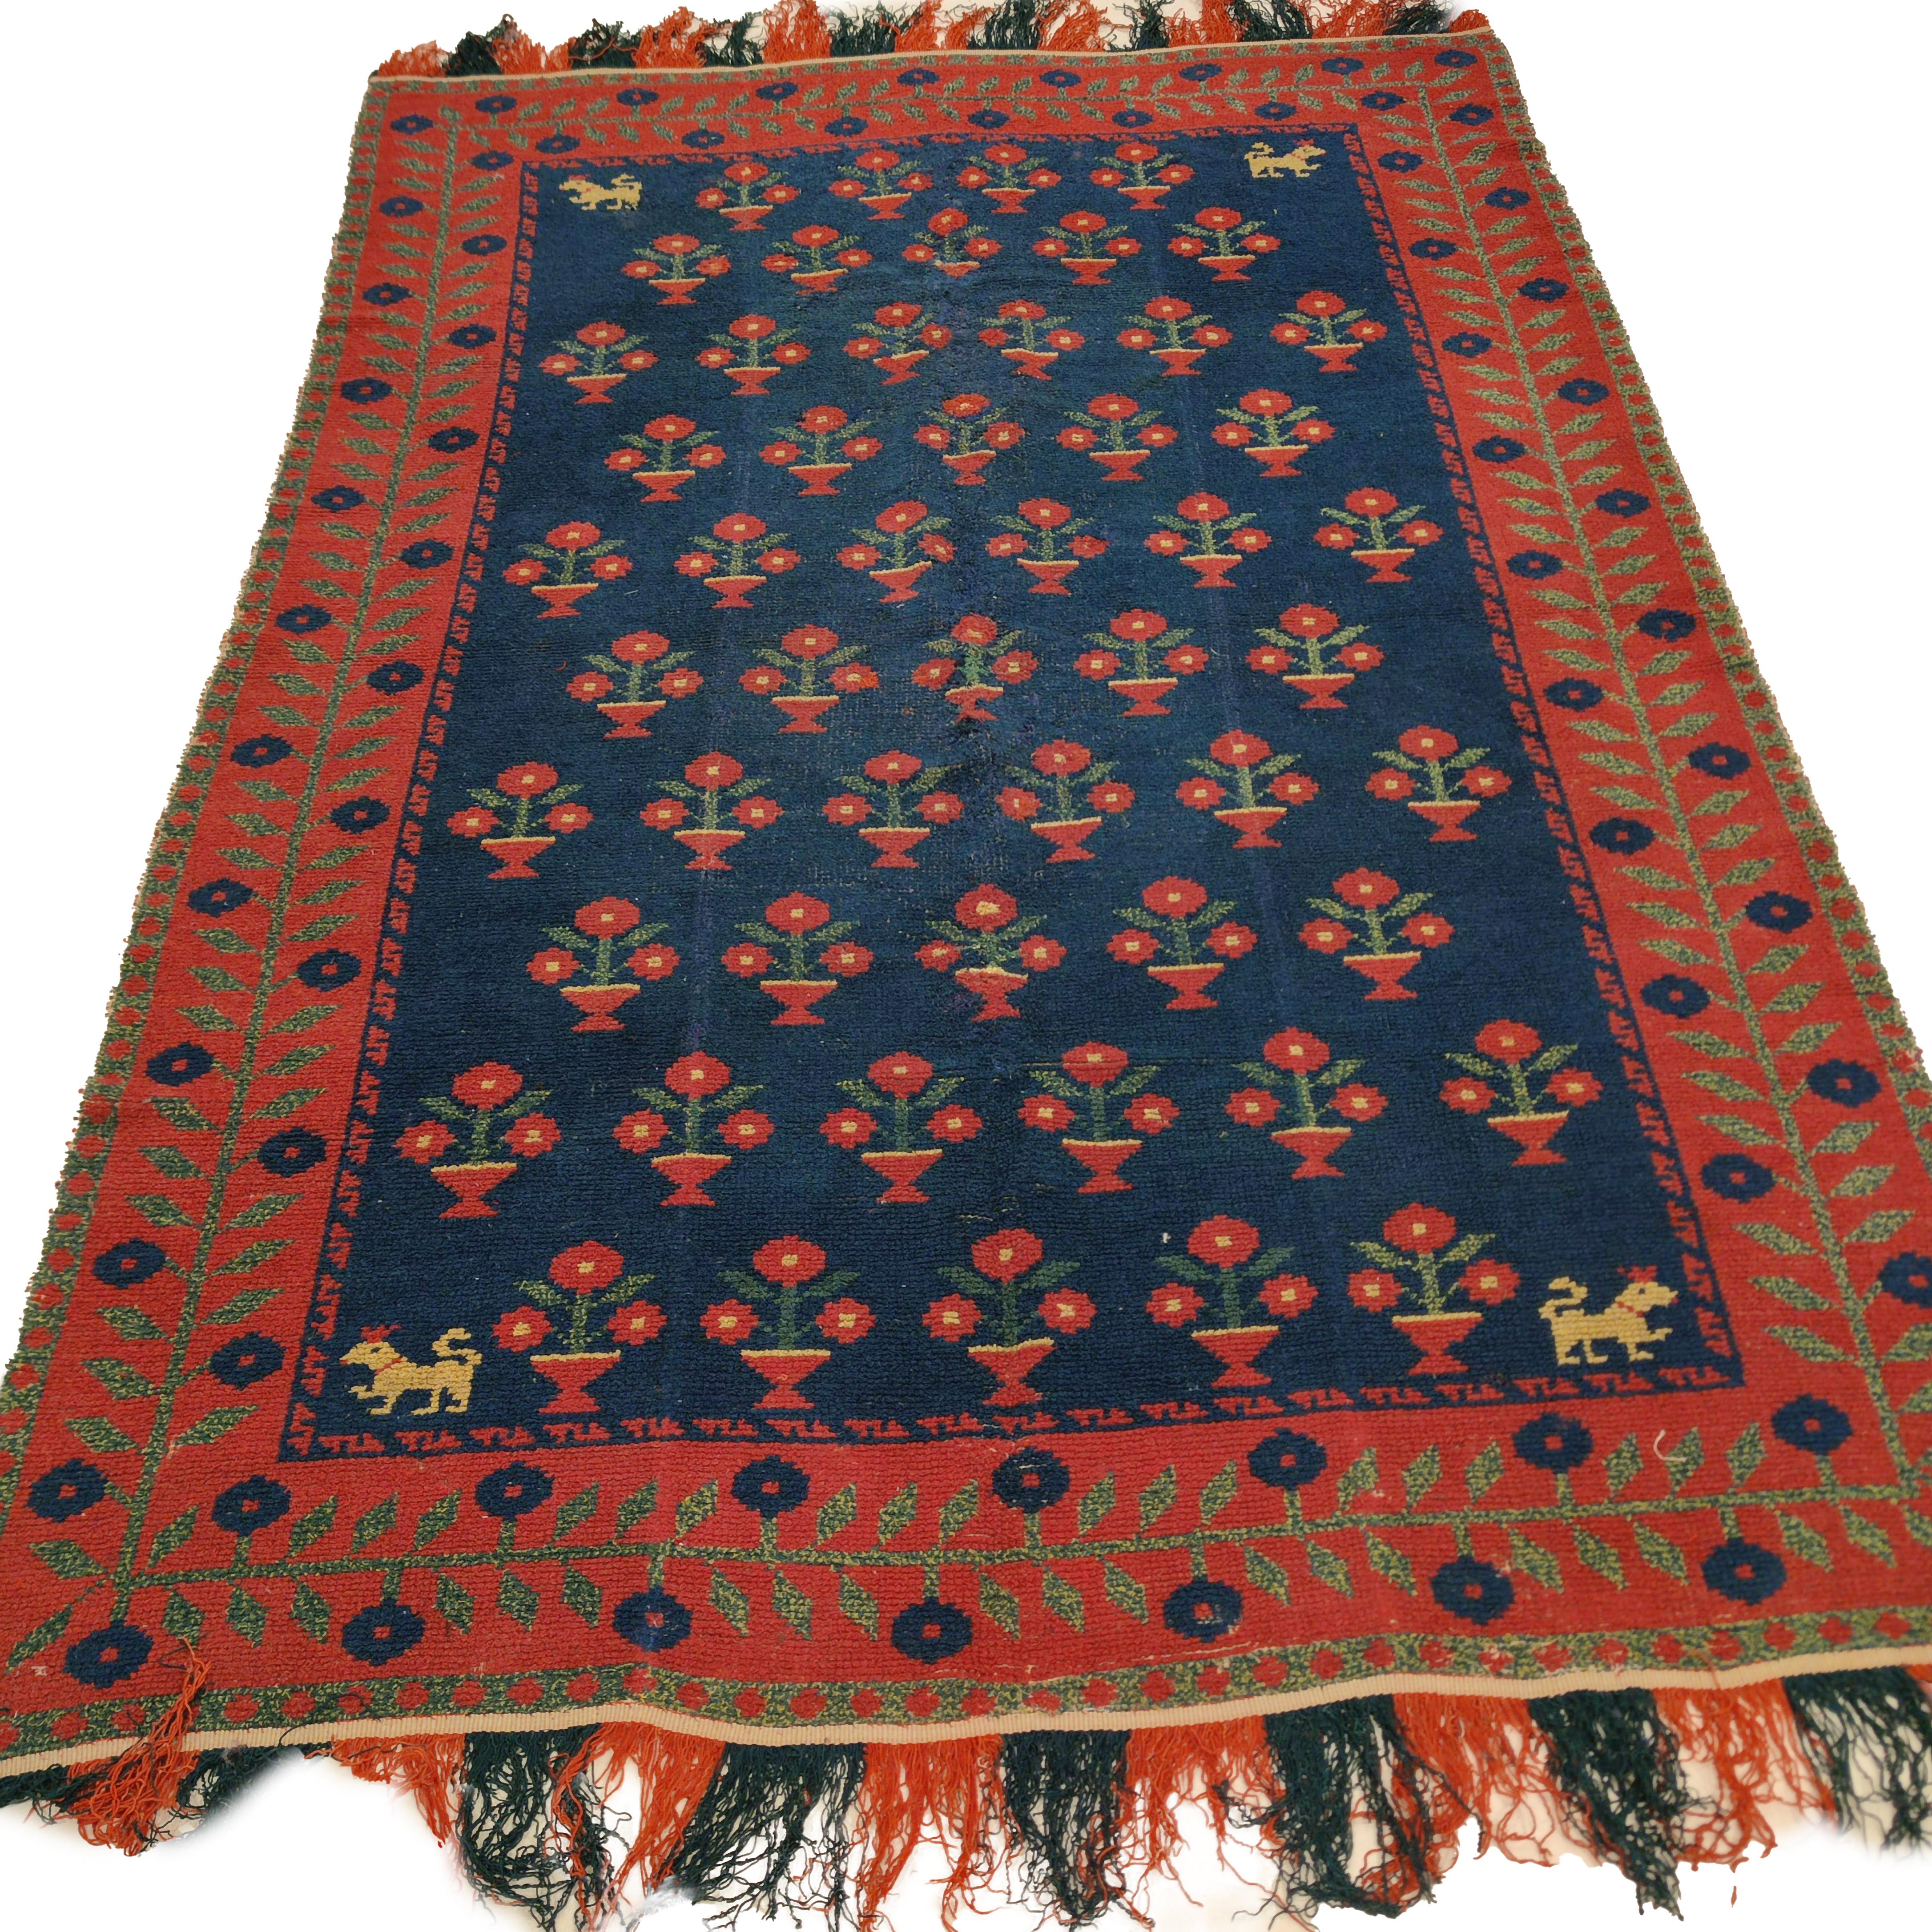 Les tapis de l'Alpujarra ont été traditionnellement tissés entre le XVe et le XIXe siècle dans les villages du district de l'Alpujarra, situé dans le sud de l'Espagne, dans la région de Grenade. Ils sont tissés en laine sur une base de lin au moyen